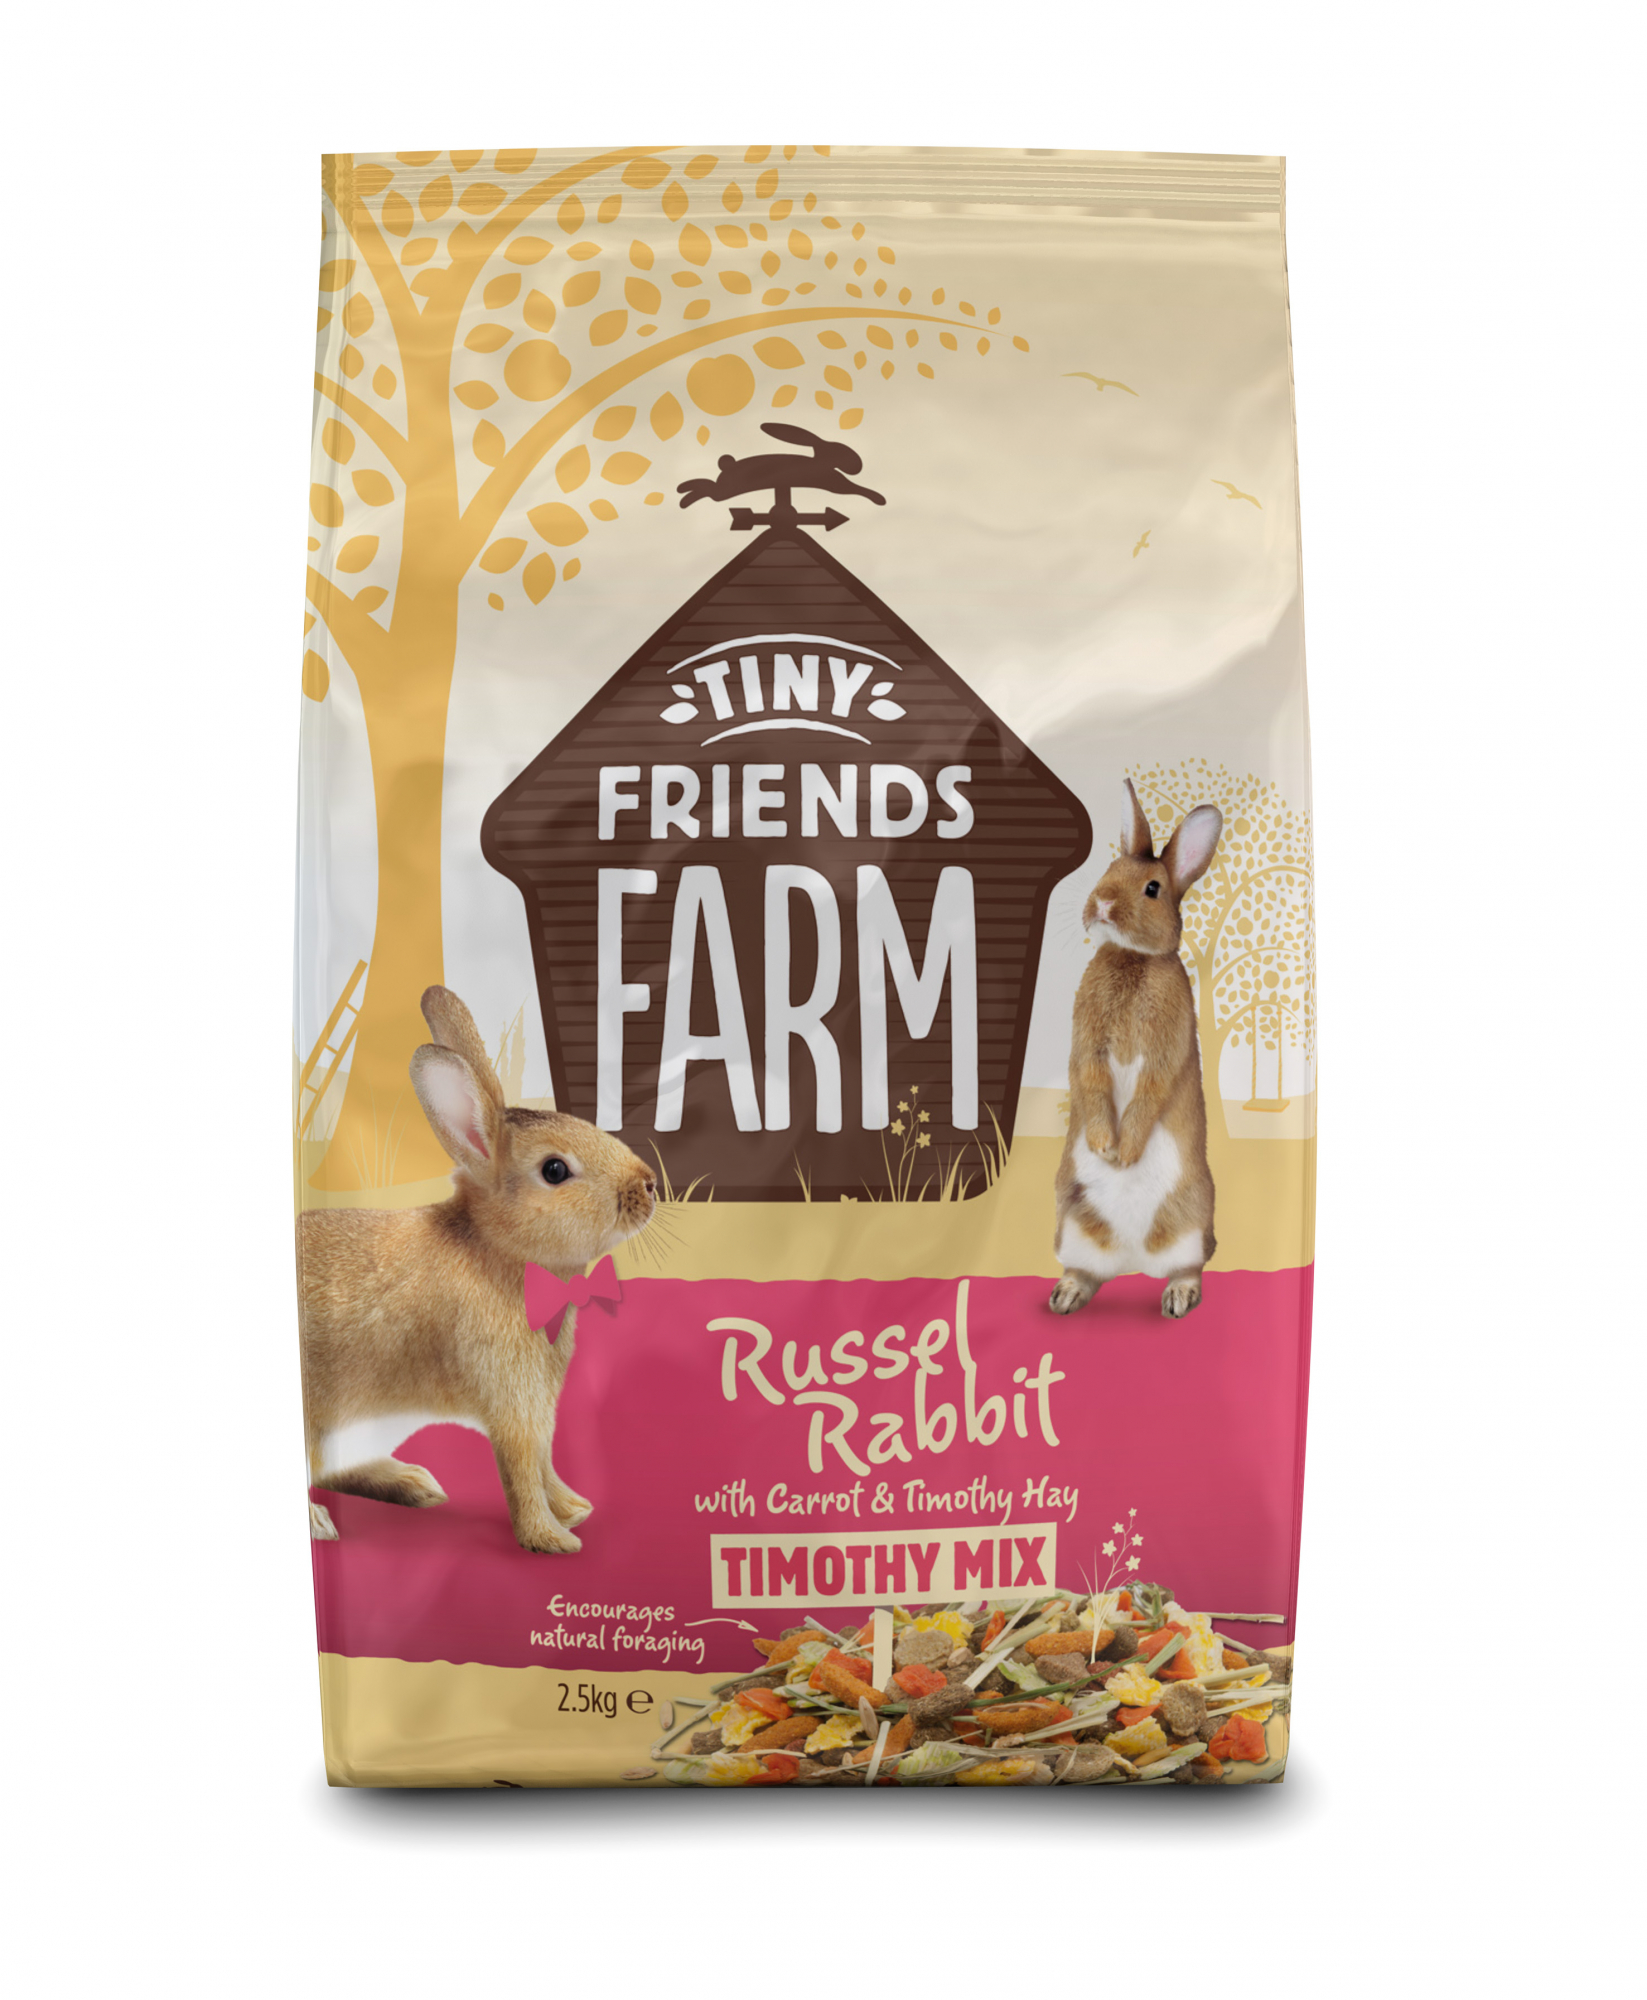 Tiny Friends Farm Russel Rabbit Food Comida para conejos